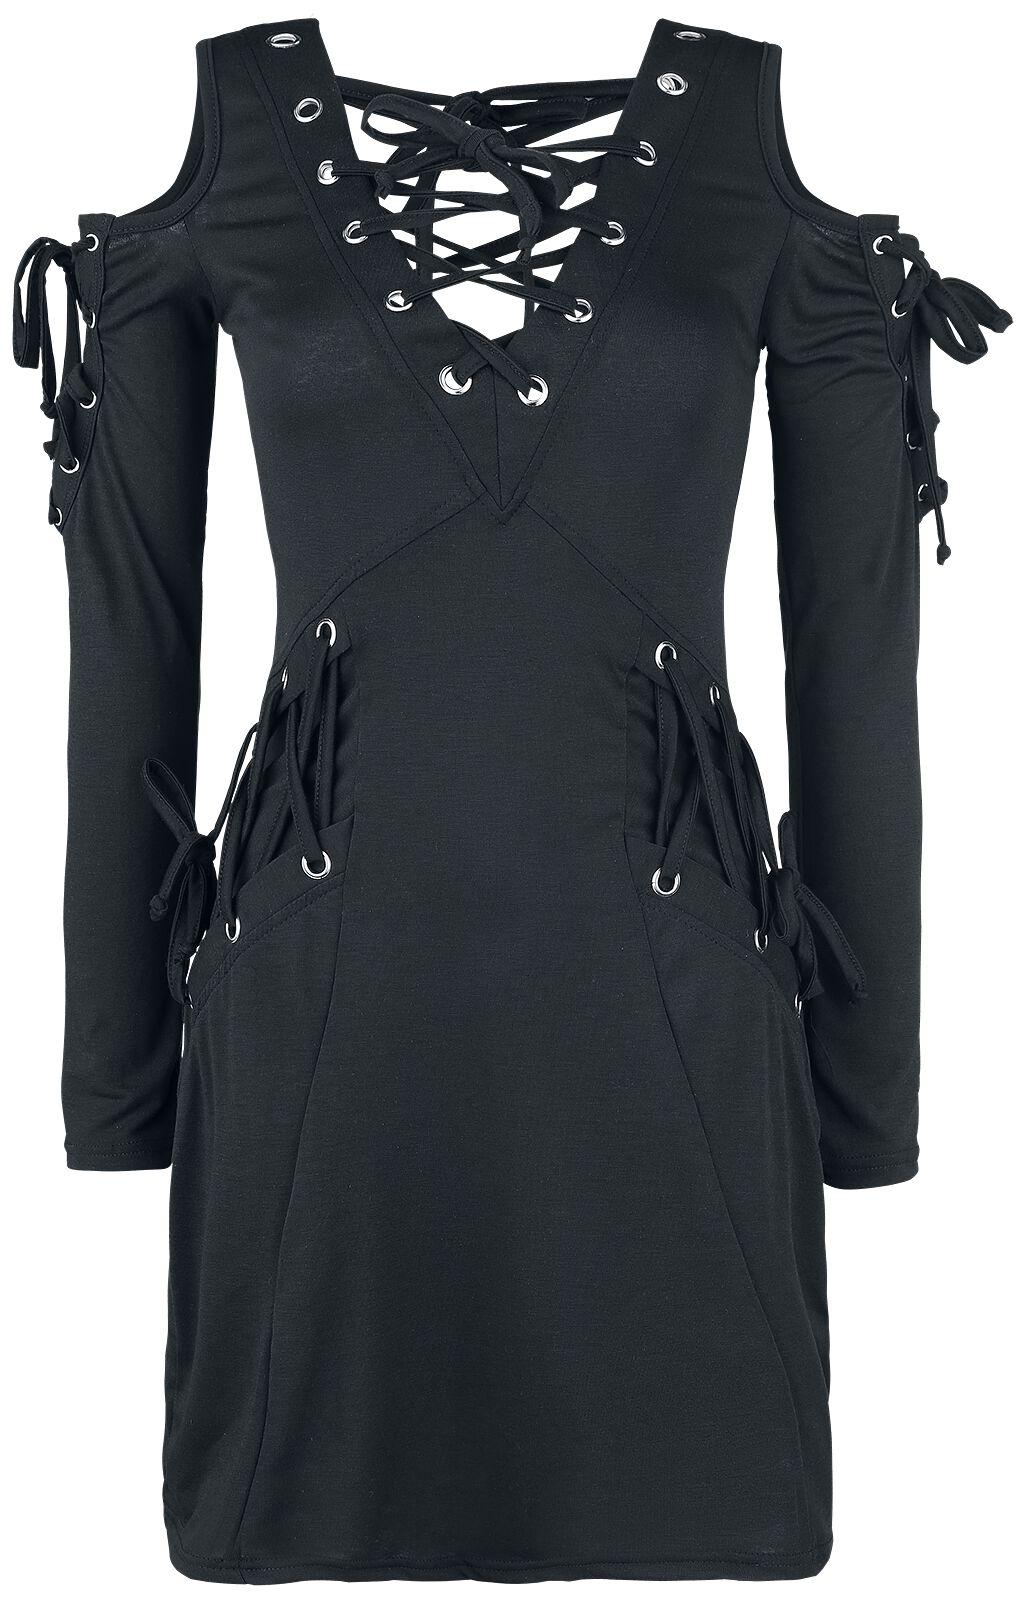 Innocent - Gothic Kurzes Kleid - Crave Top - S bis XXL - für Damen - Größe XL - schwarz